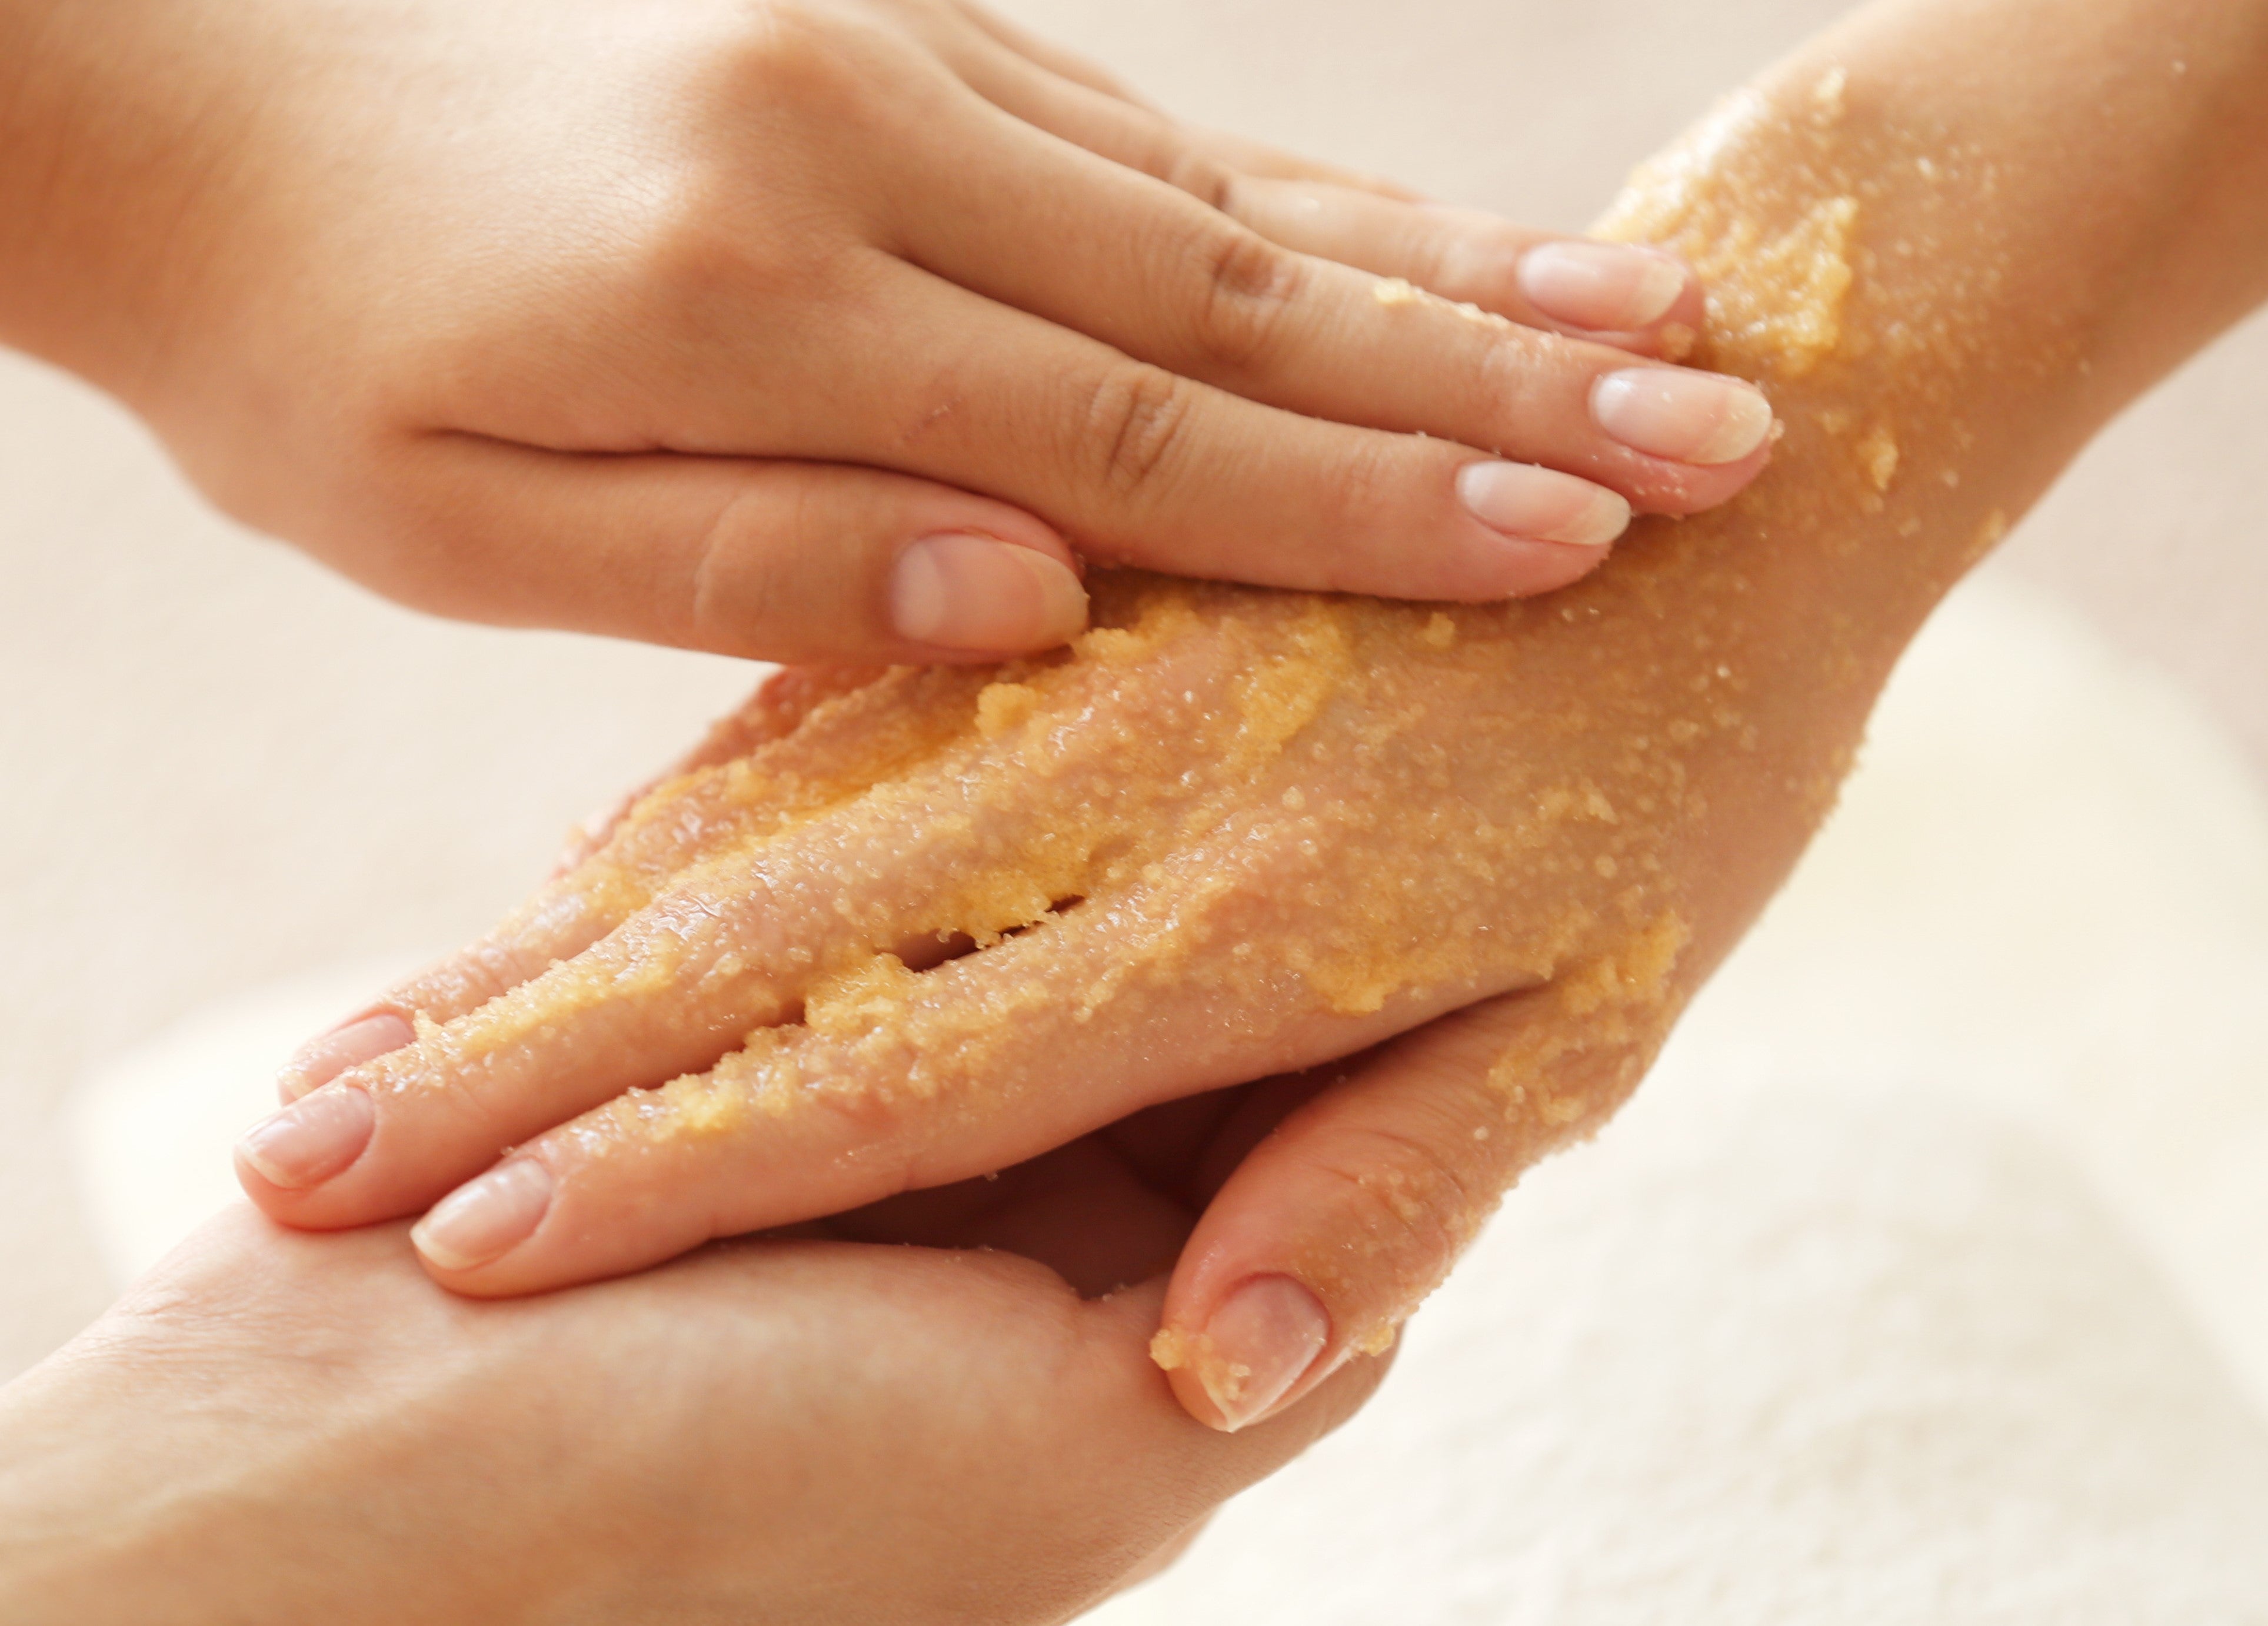 beautiful hands massaged with a salt scrub